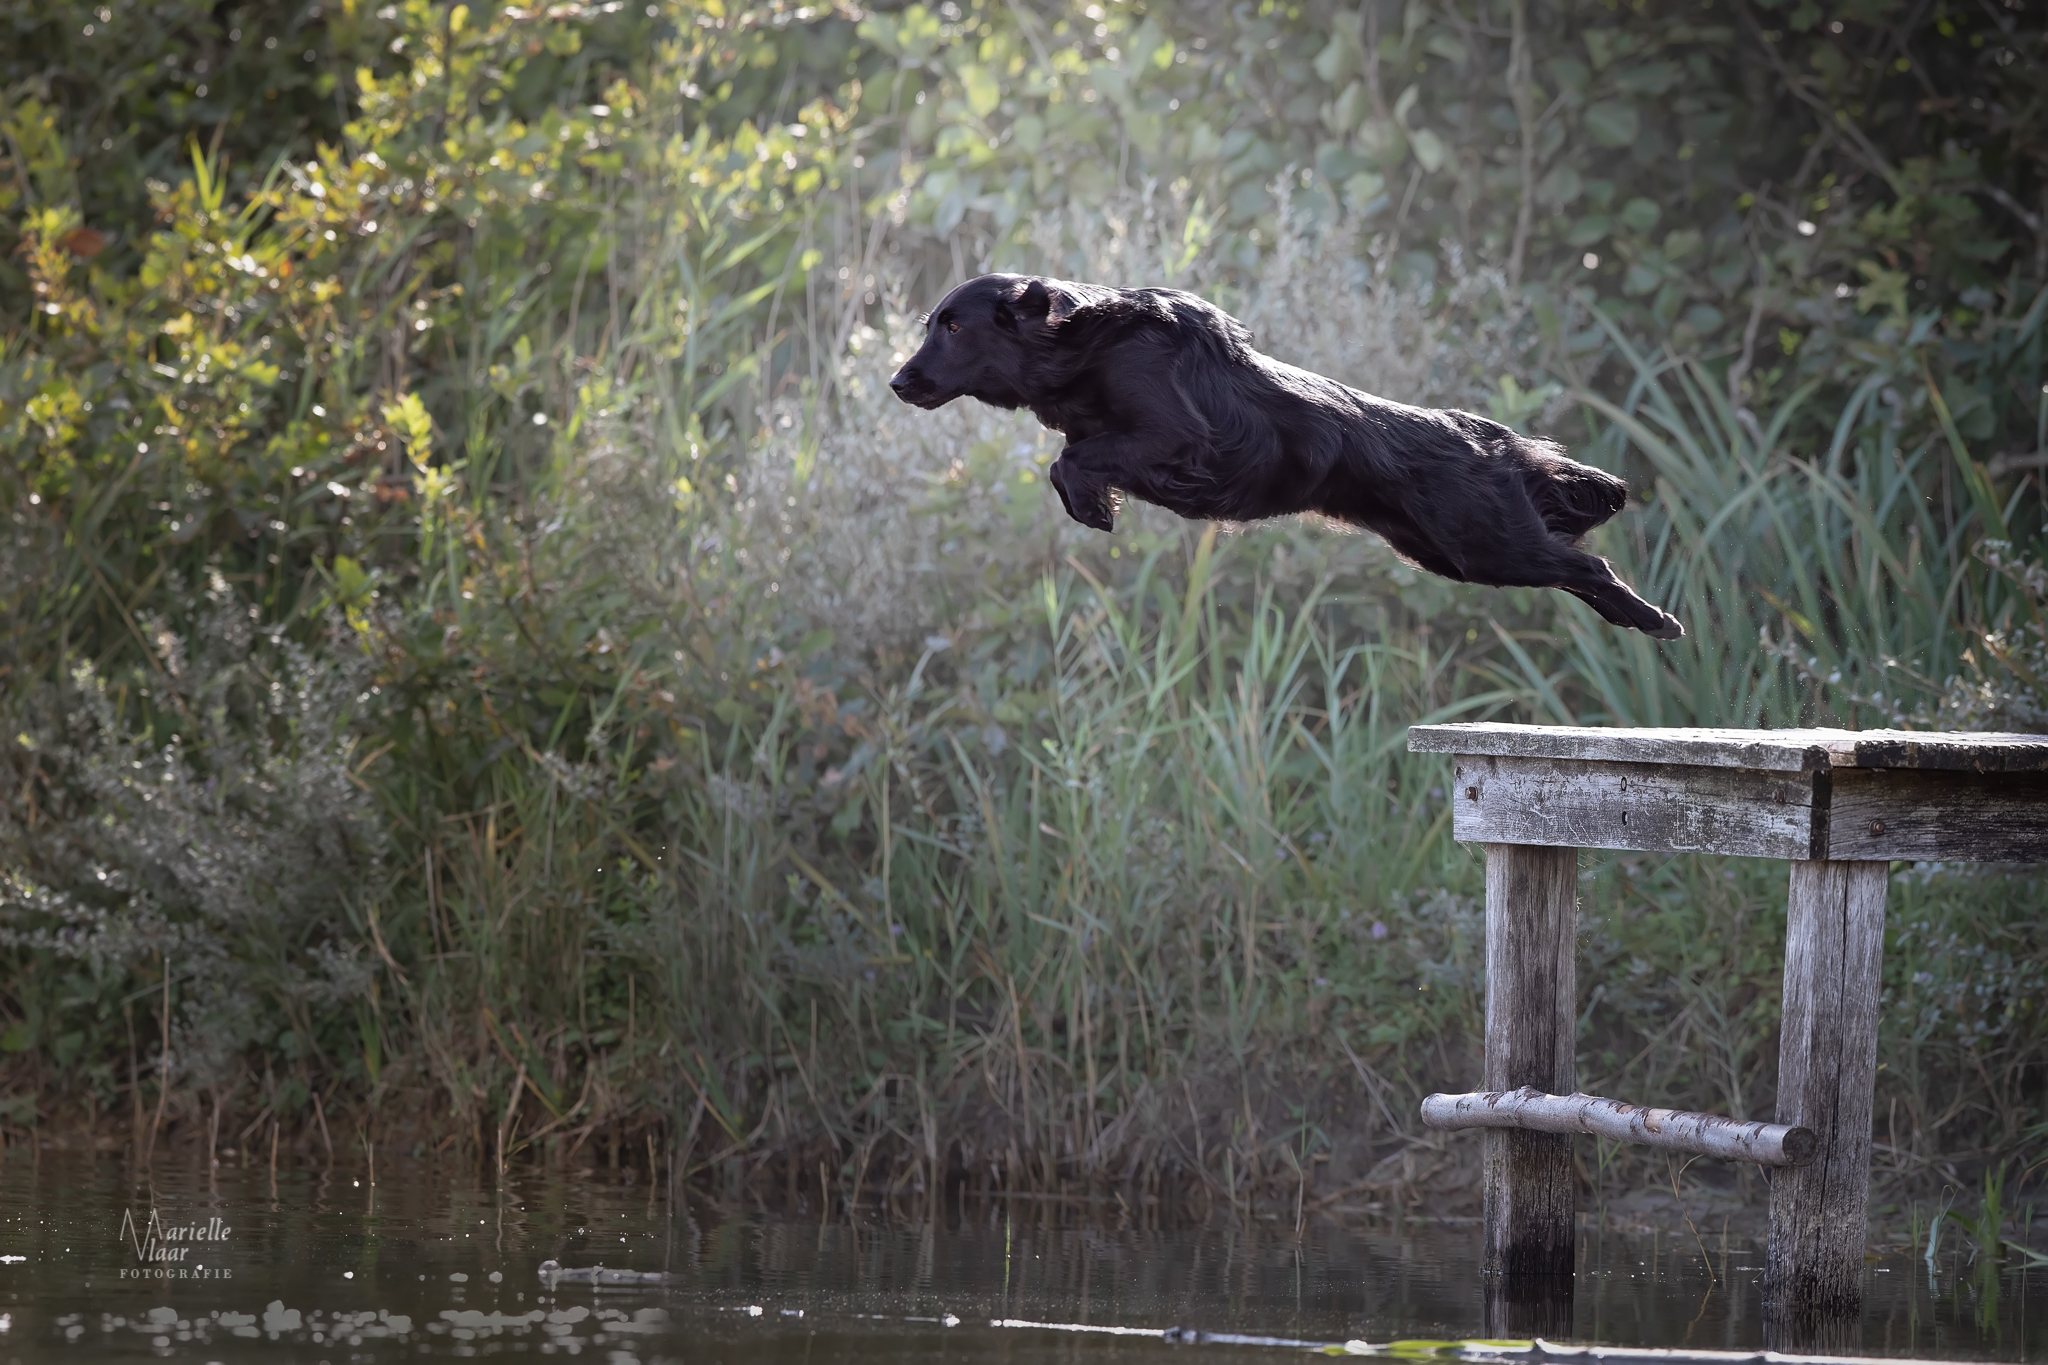 Vliegende hond op de foto (Noordholland)